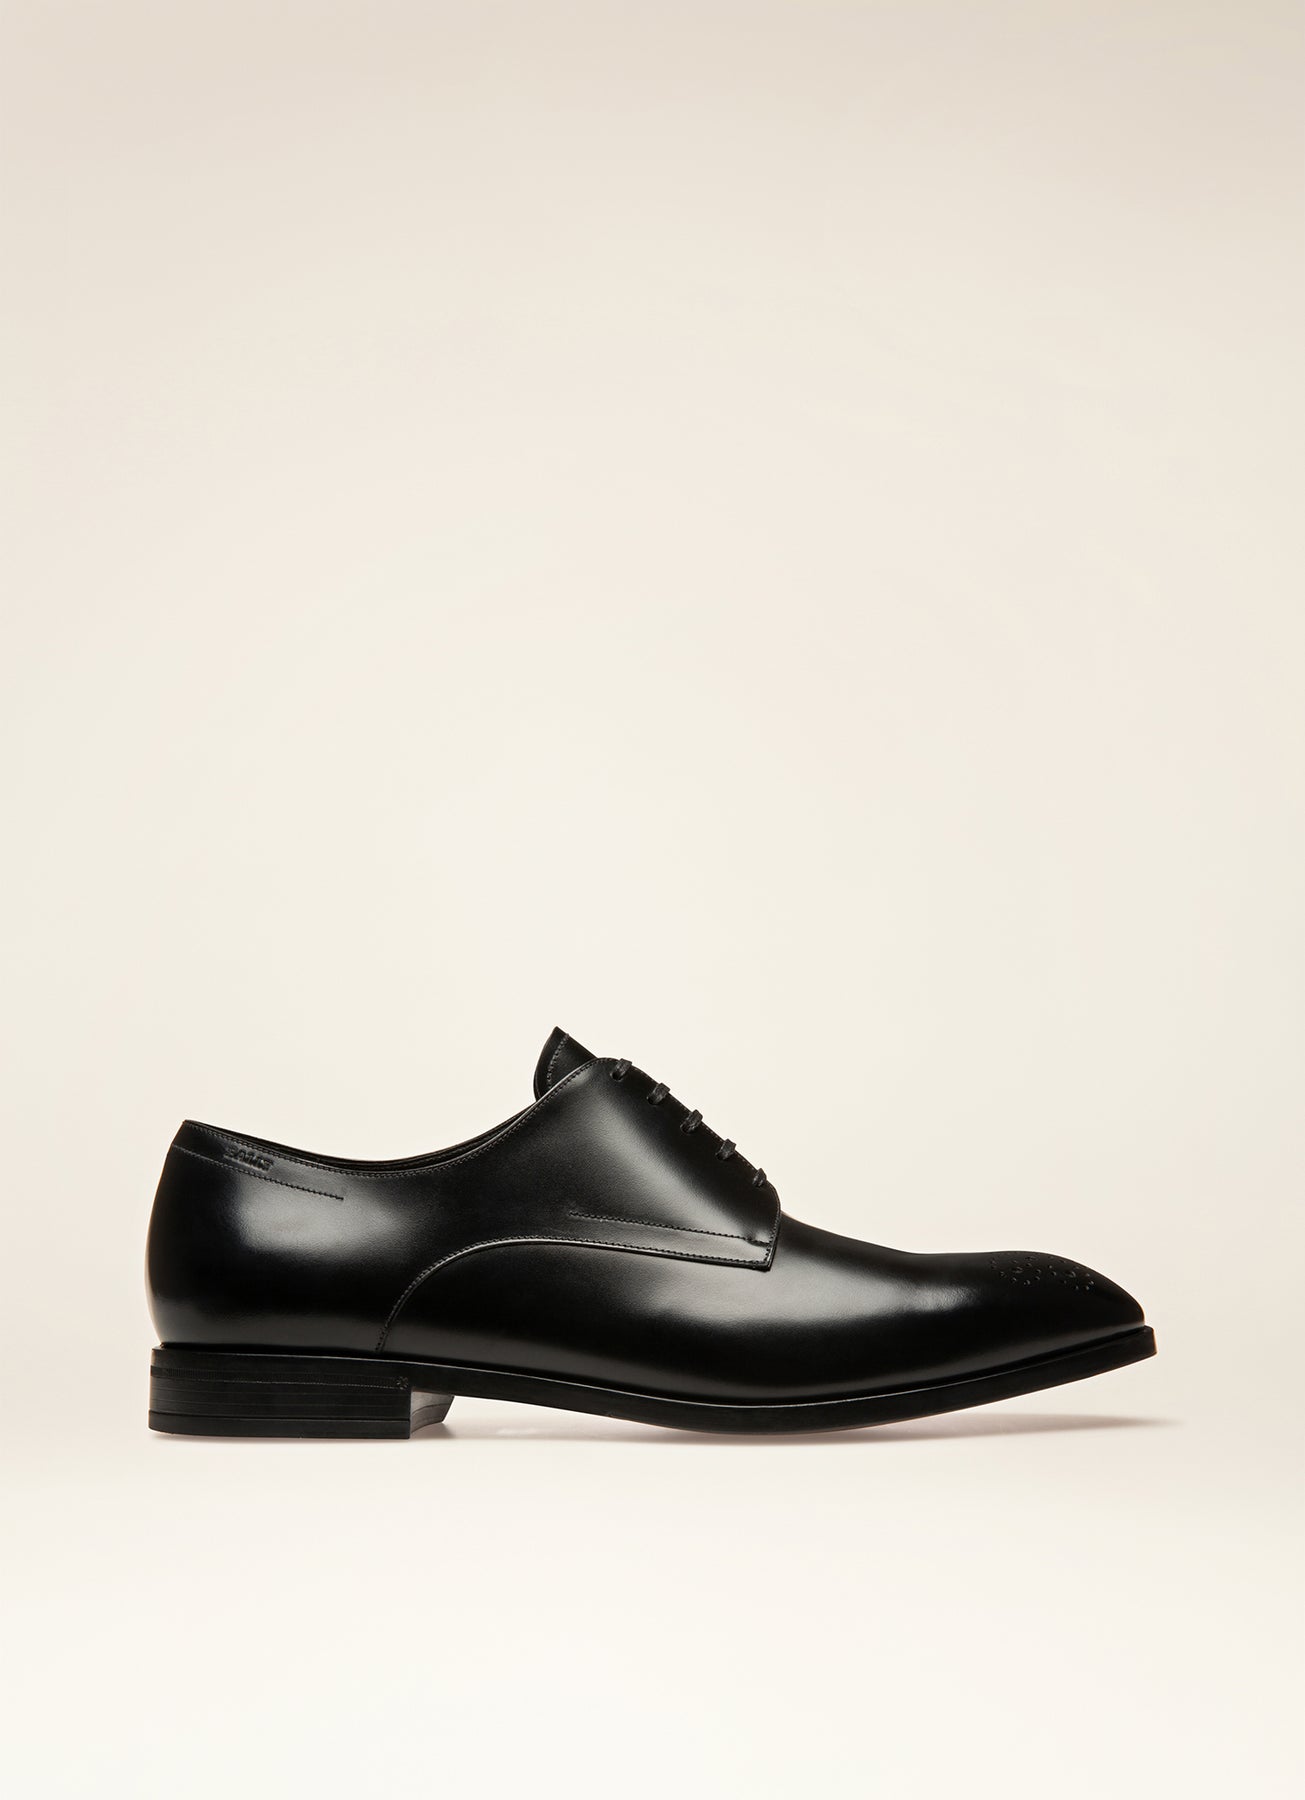 Sell Louis Vuitton Kensington Derby Shoes - Black